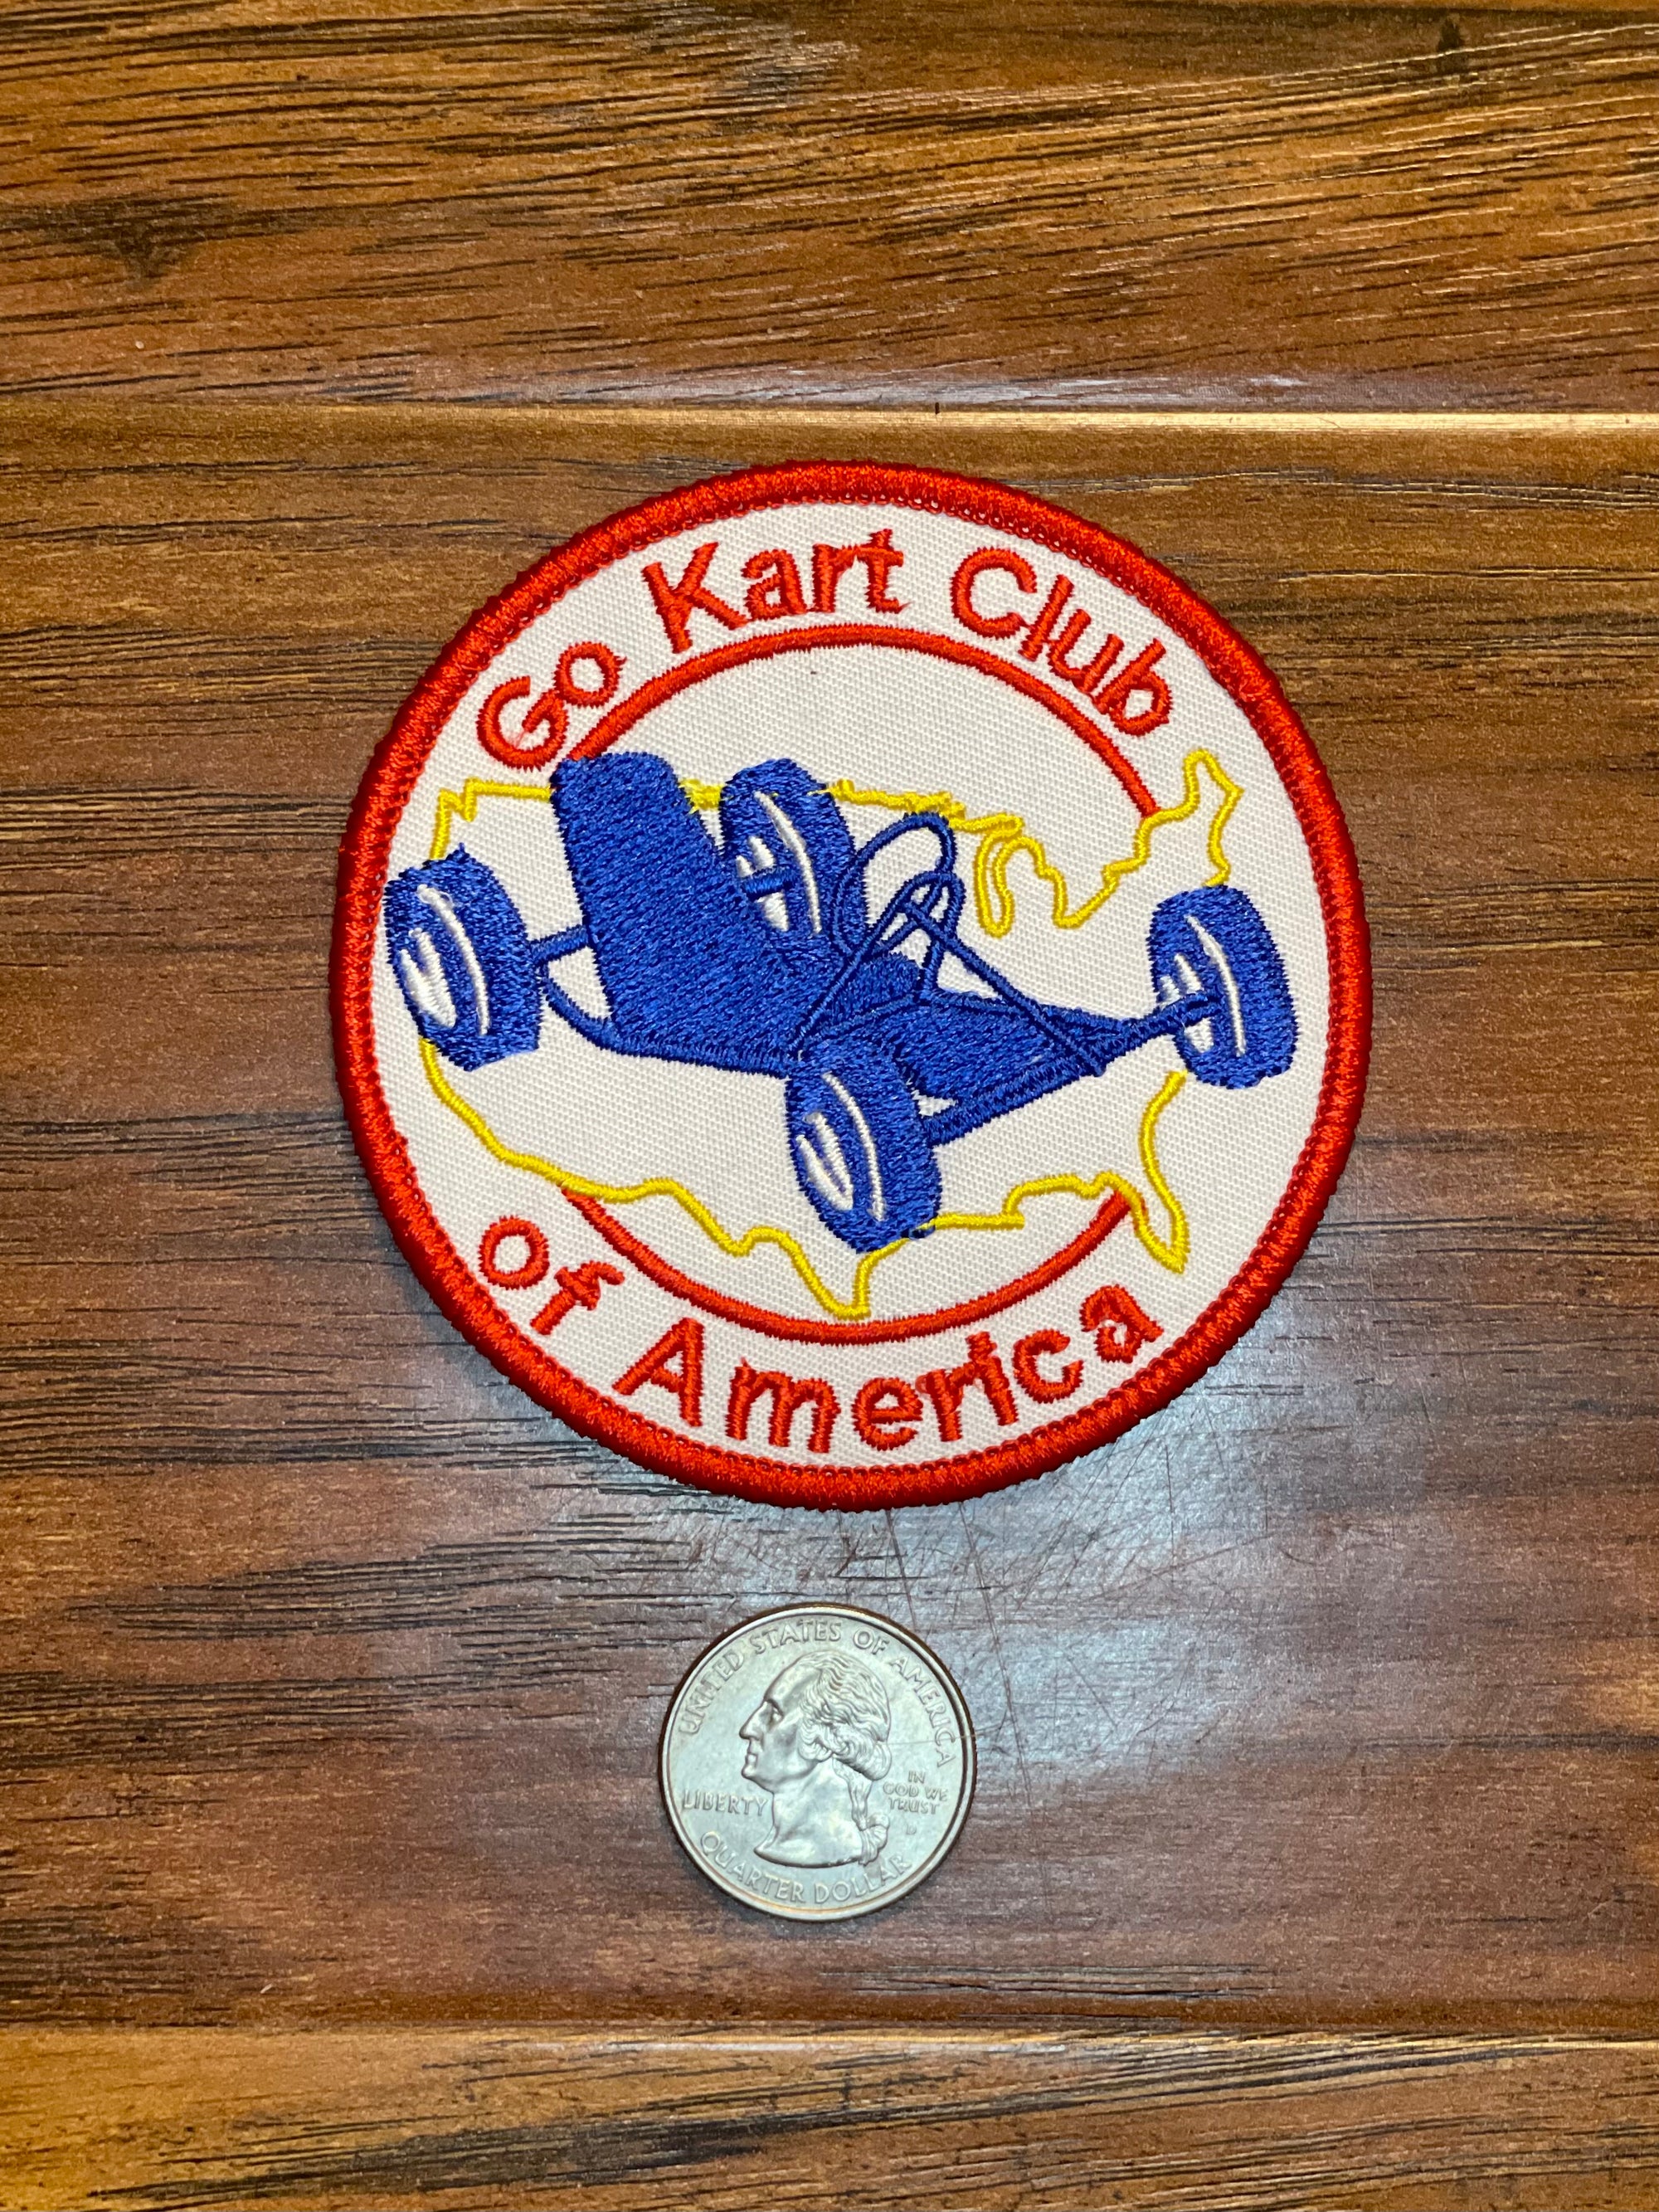 Go Kart Club of America